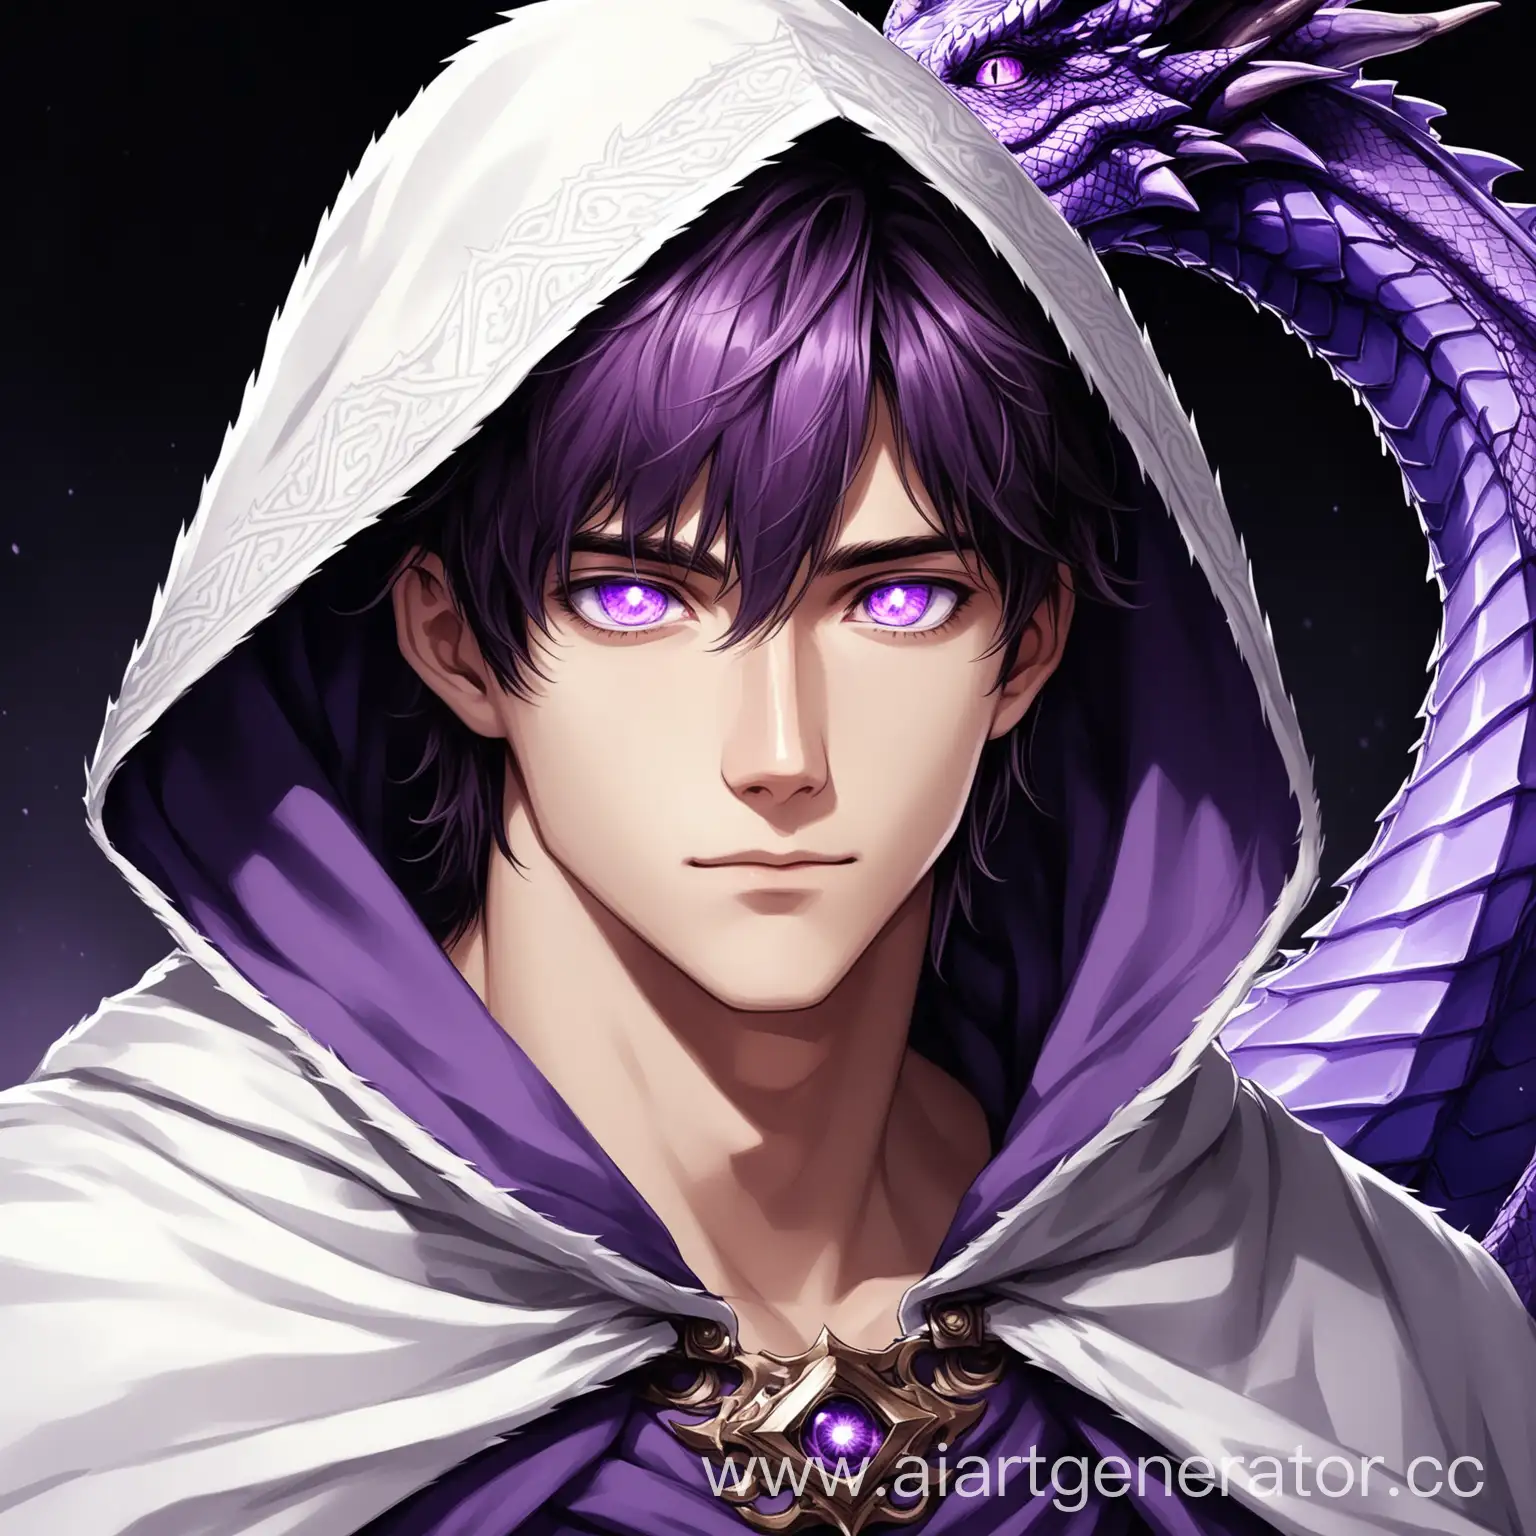 25-летний красивый мужчина с фиолетовыми драконьими глазами, одетый в бело-фиолетовый плащ с капюшоном.